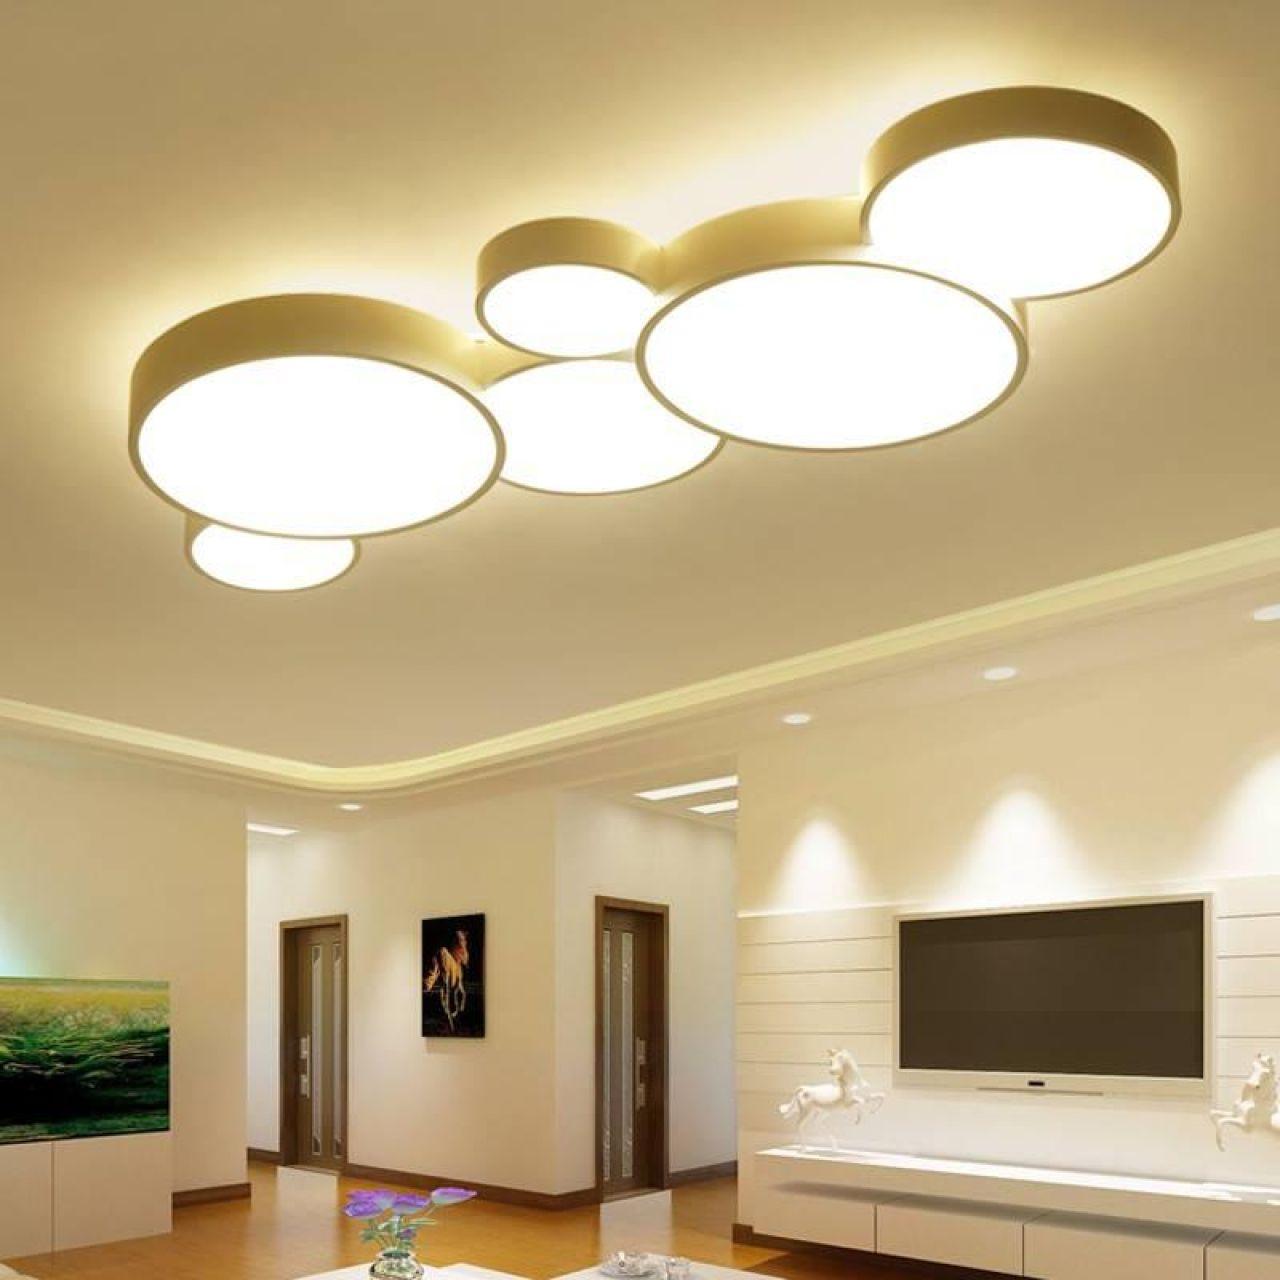 طراحی نورهای سقفی